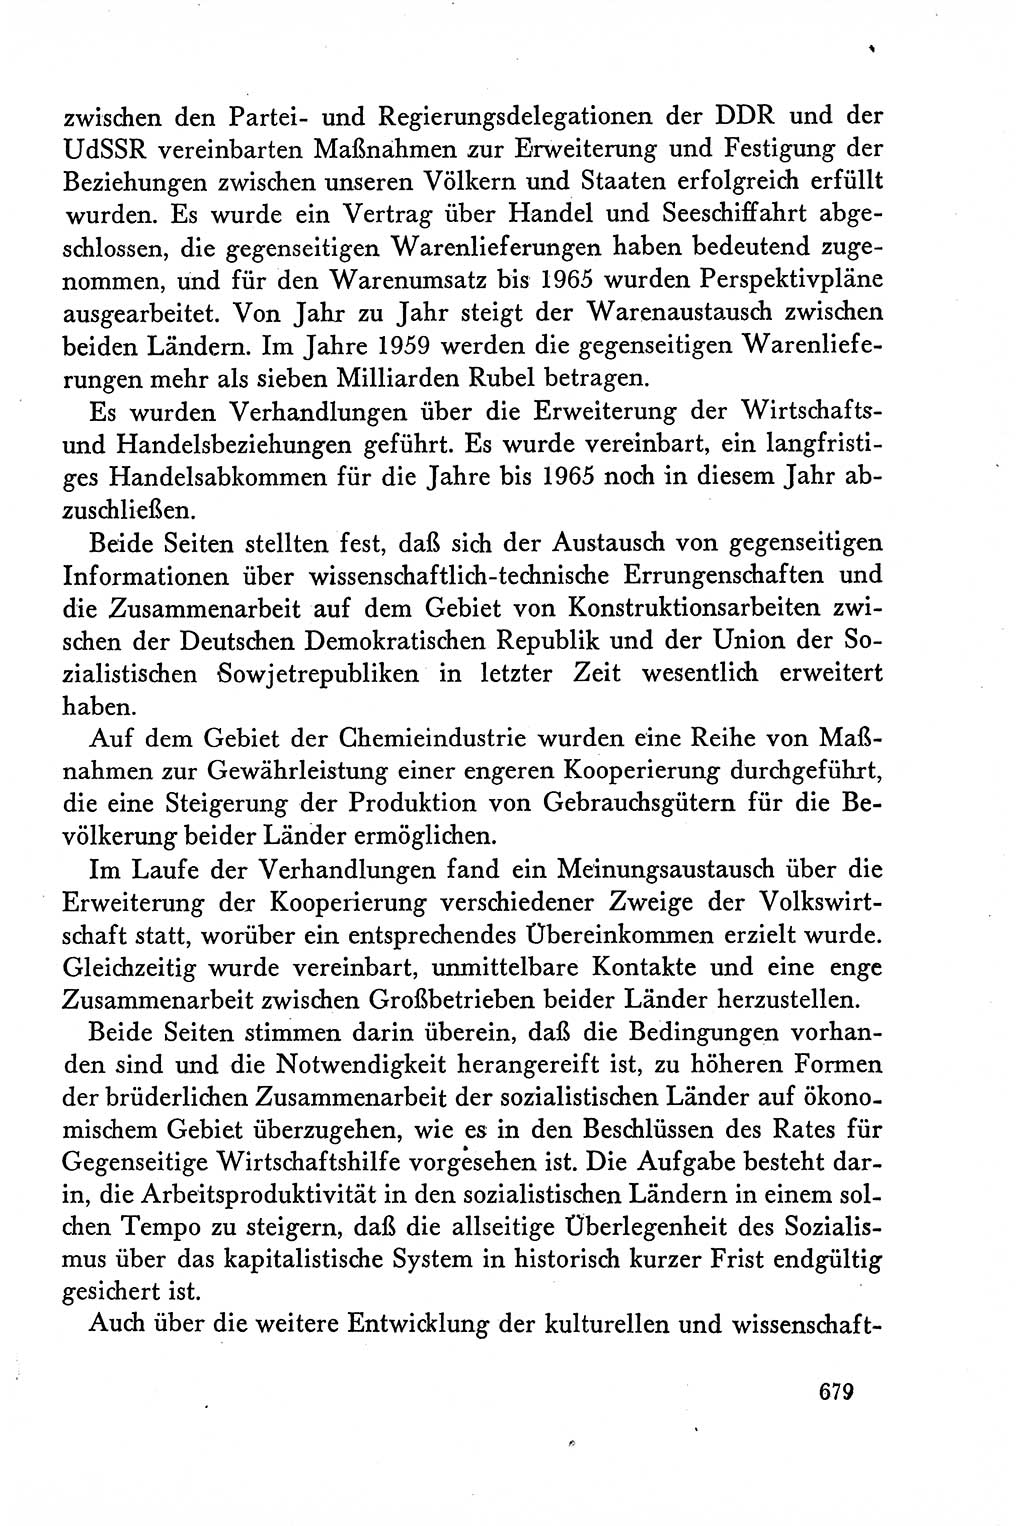 Dokumente der Sozialistischen Einheitspartei Deutschlands (SED) [Deutsche Demokratische Republik (DDR)] 1958-1959, Seite 679 (Dok. SED DDR 1958-1959, S. 679)